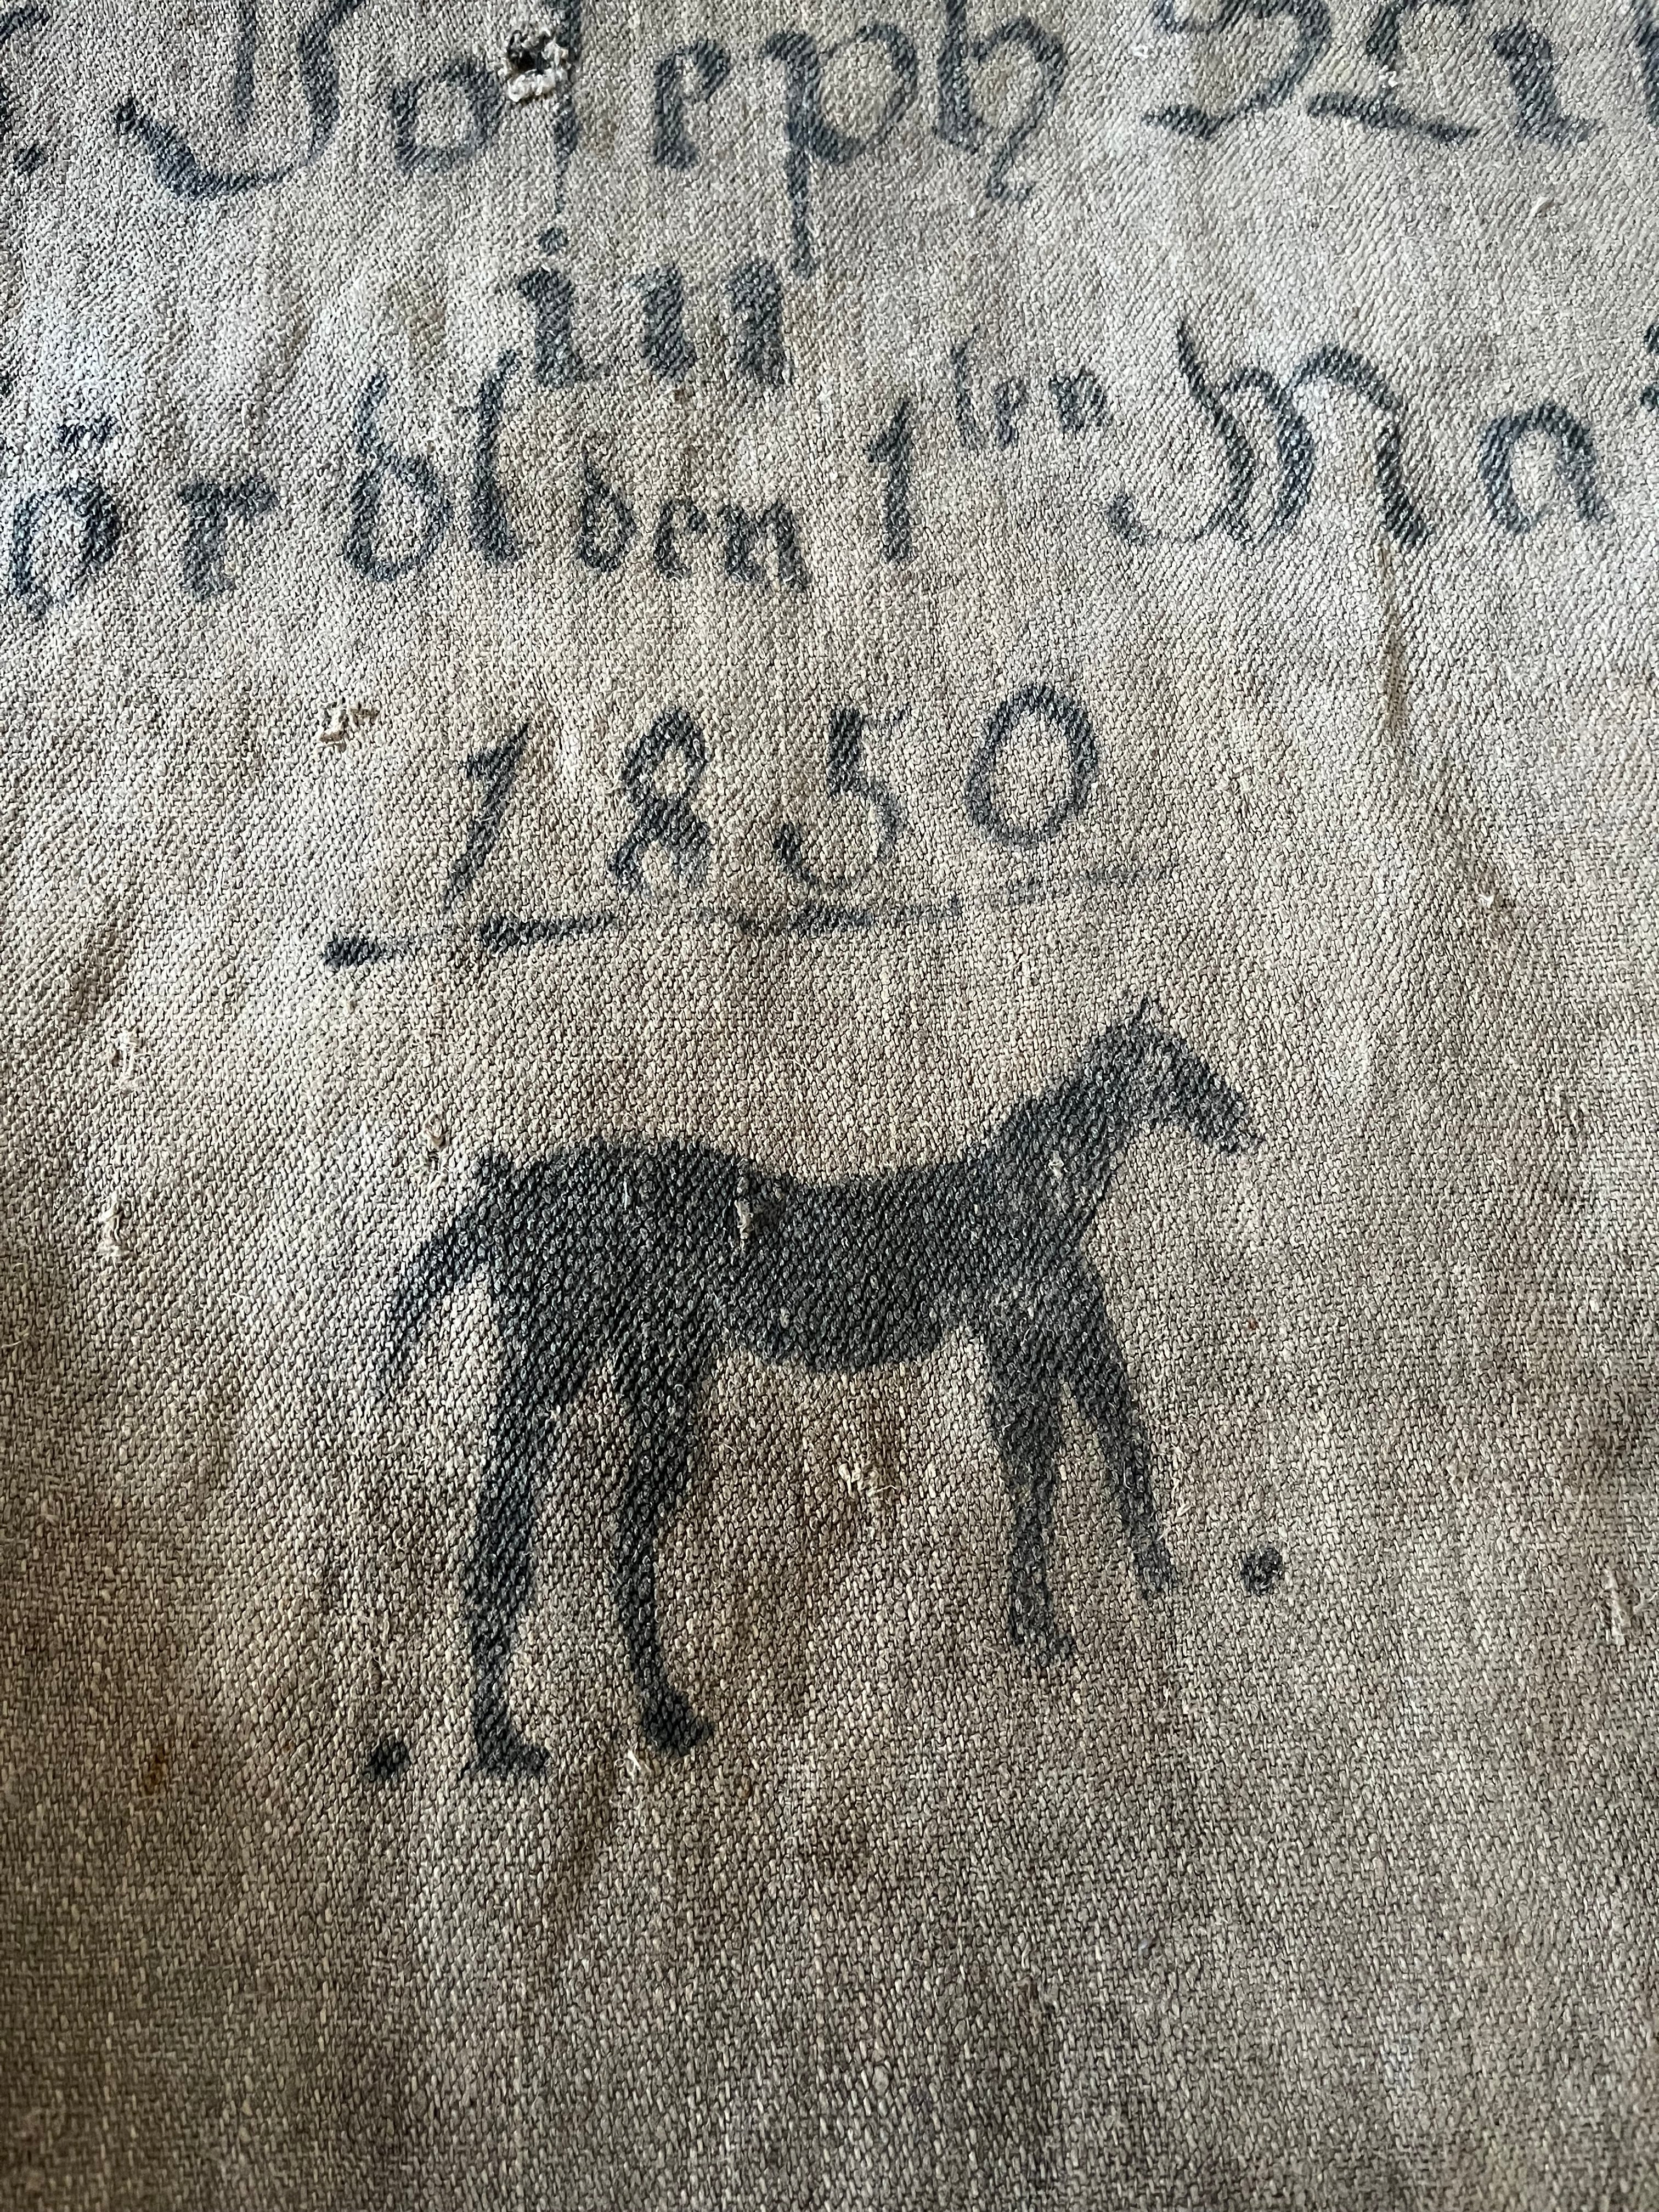 Rarität von 1850: musealer Leinensack mit Pferd